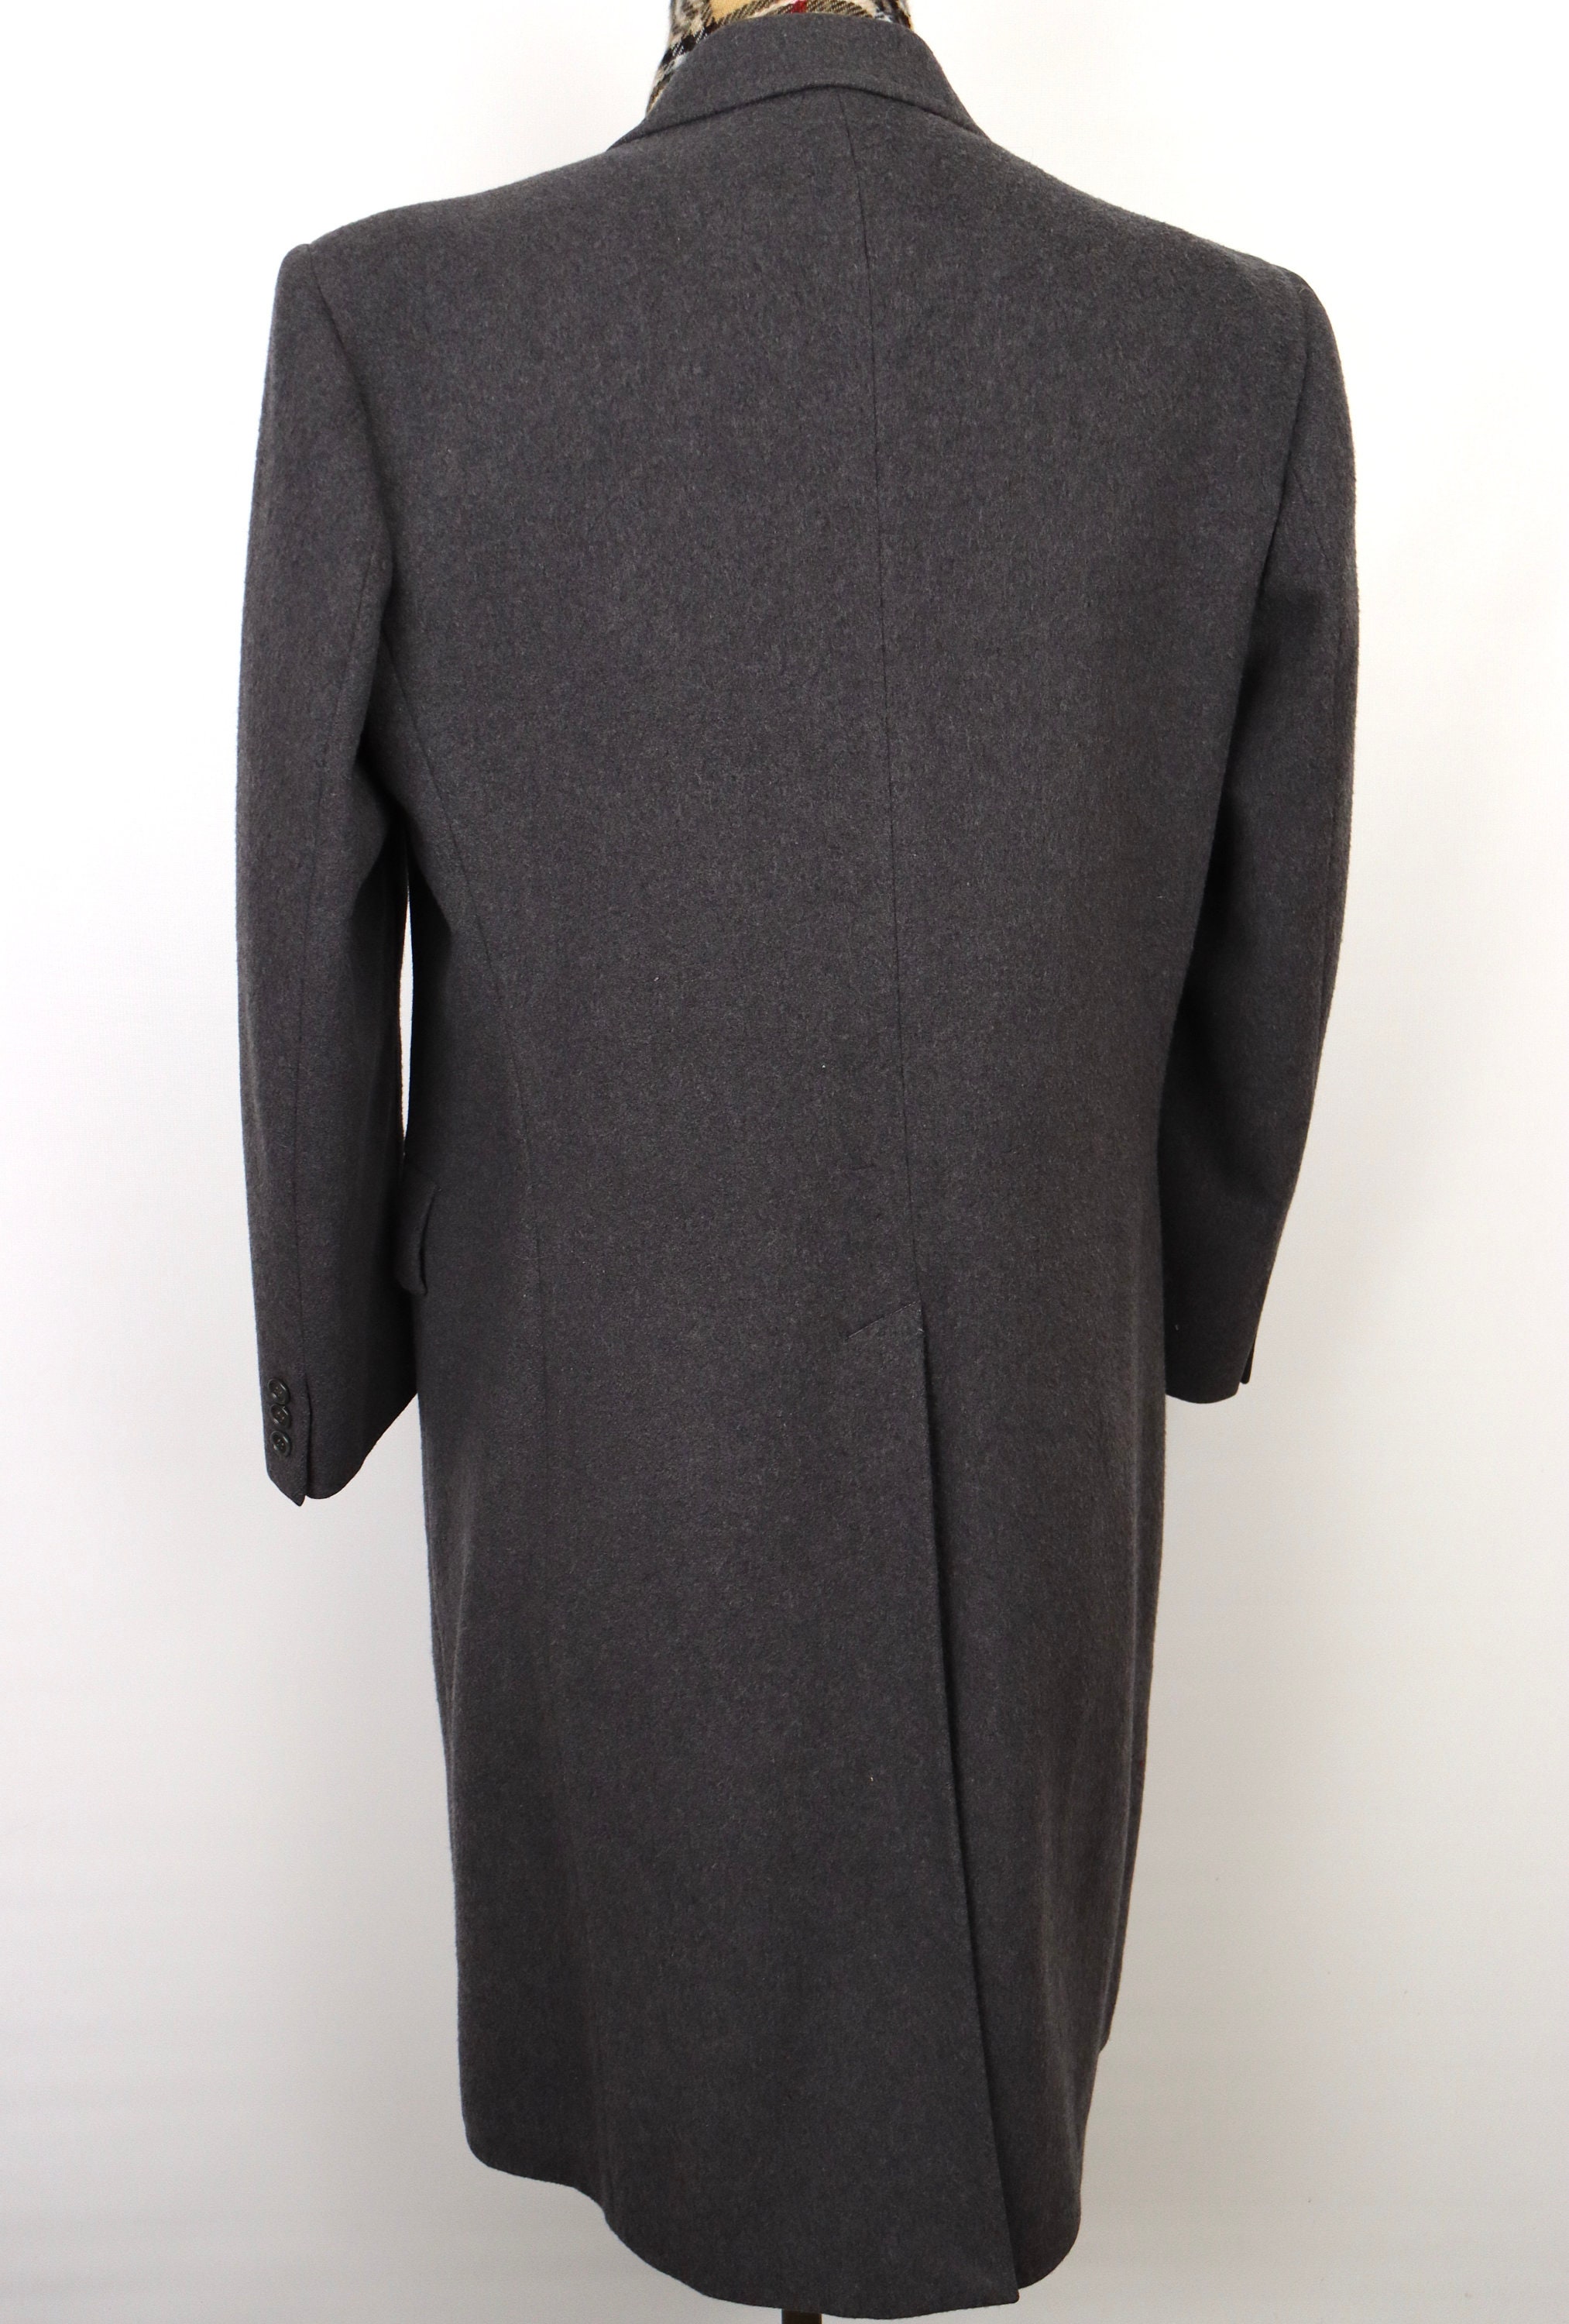 1980s Gray Wool Overcoat W/ Double Breasted Peak Lapel / - Etsy